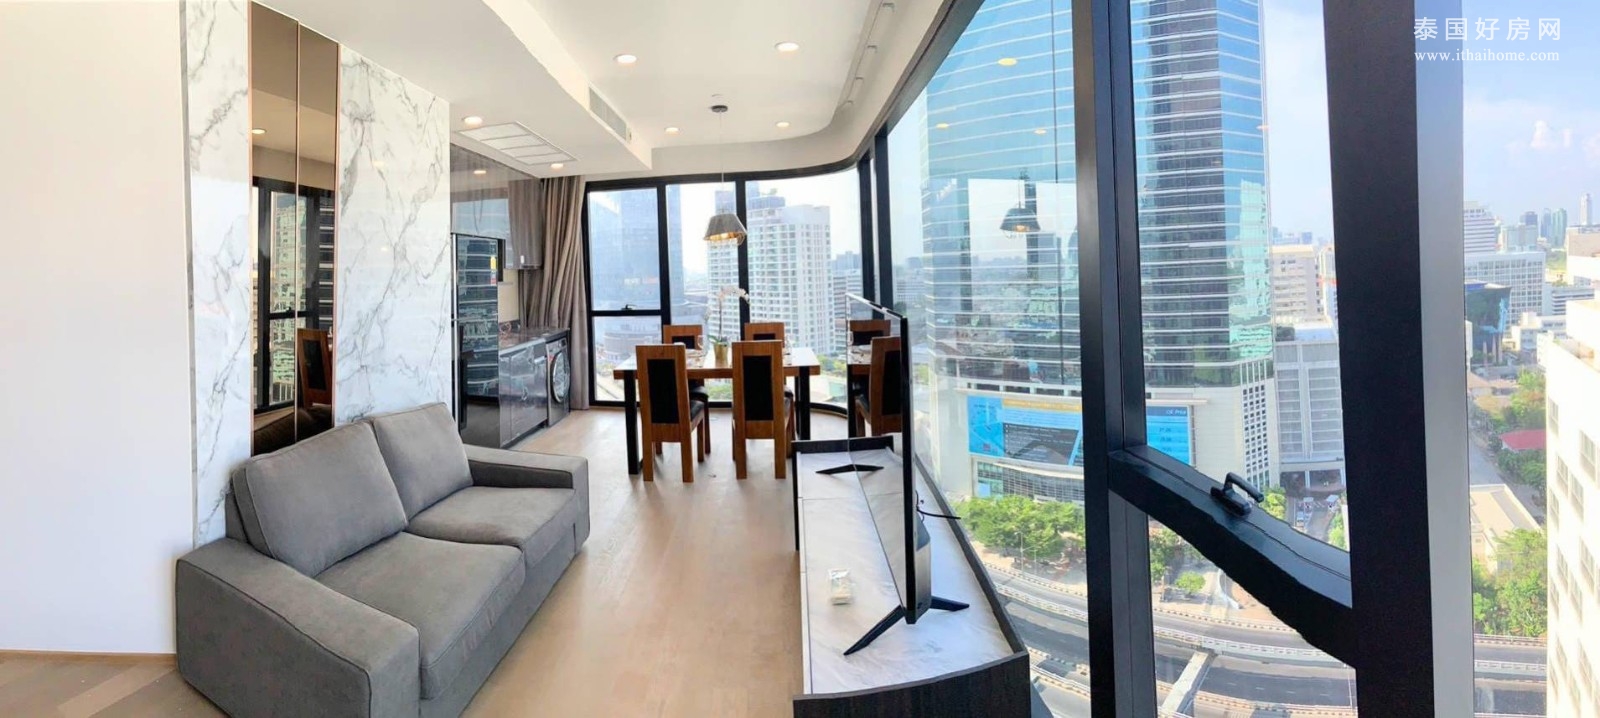 挽叻区 | Ashton Chula Silom 公寓出租 2卧 63平米 55,000泰铢/月